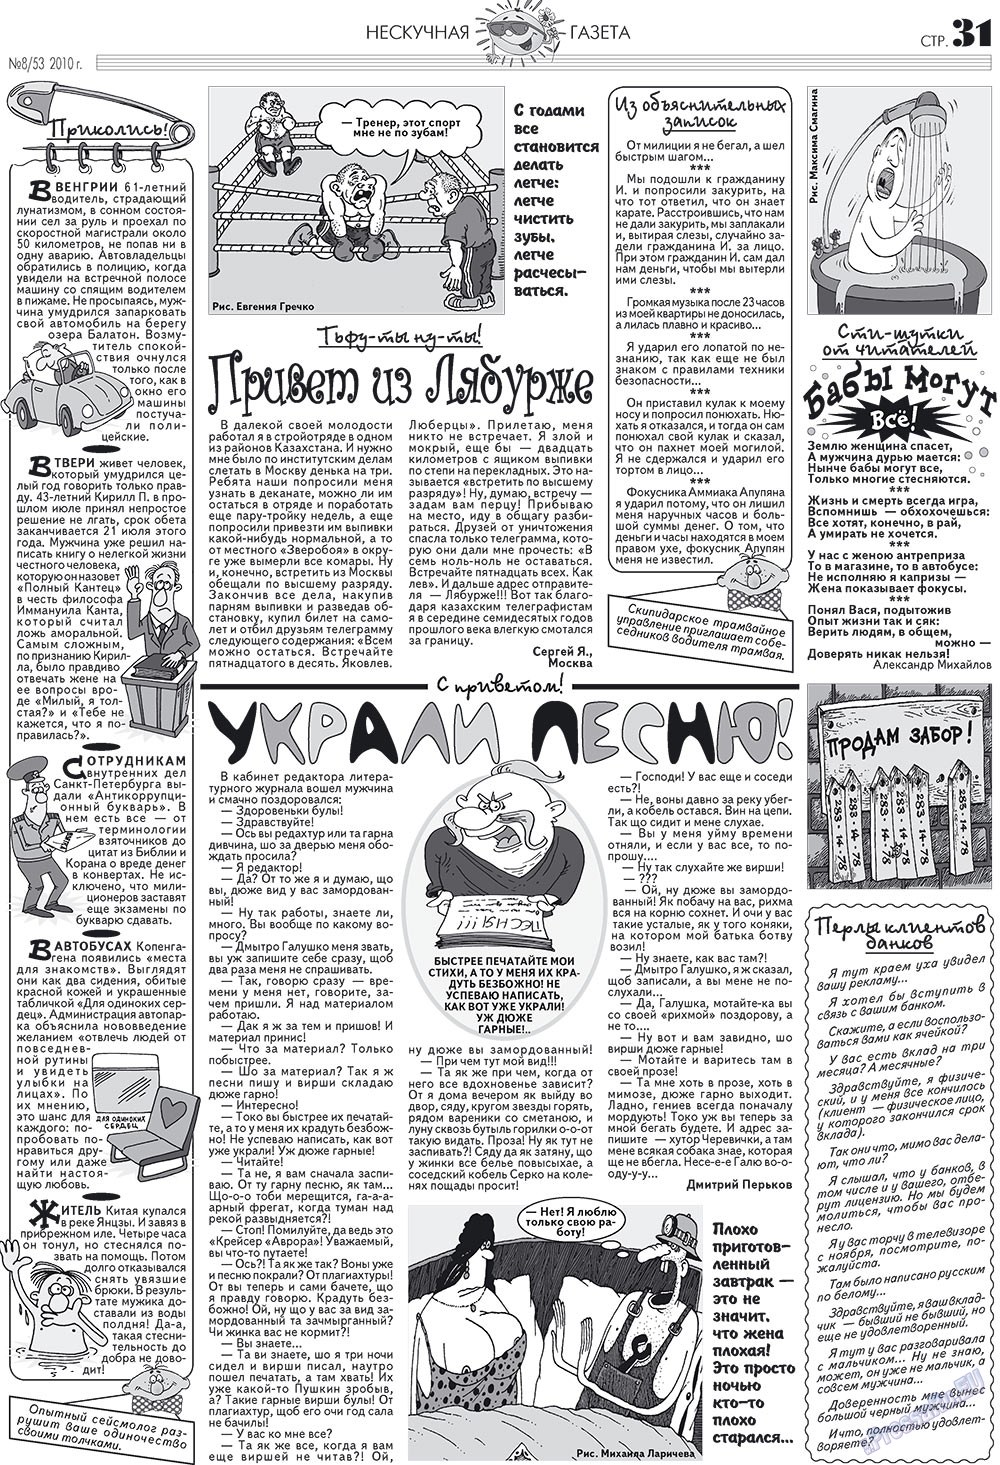 Нескучная газета (журнал). 2010 год, номер 8, стр. 27